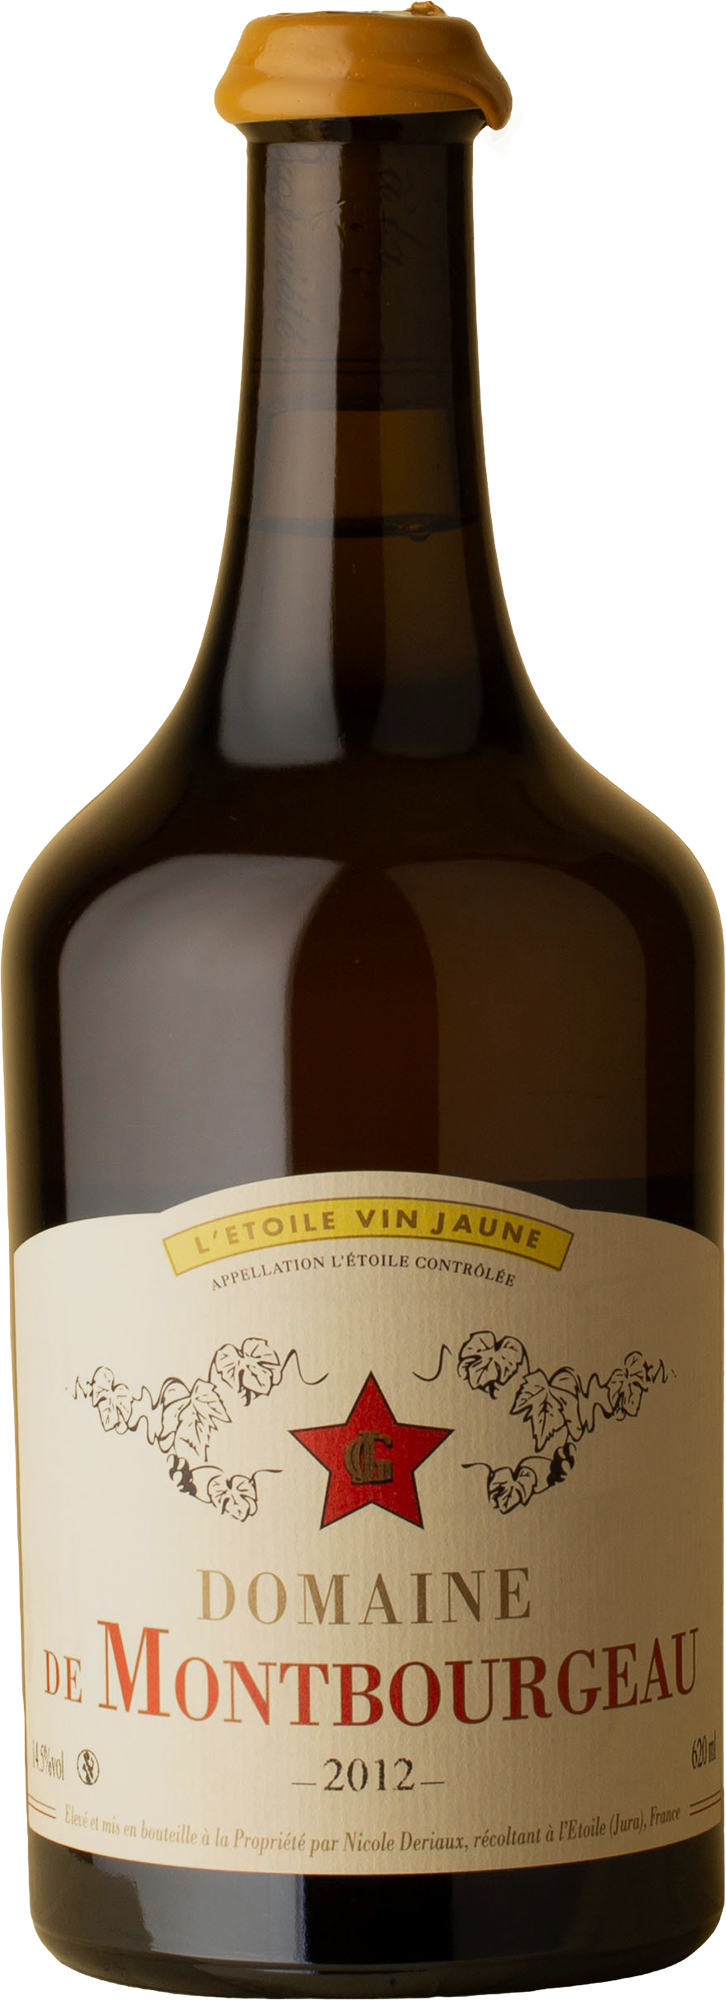 Domaine de Monbourgeau - Vin Jaune 620mL Savagnin 2012 White Wine